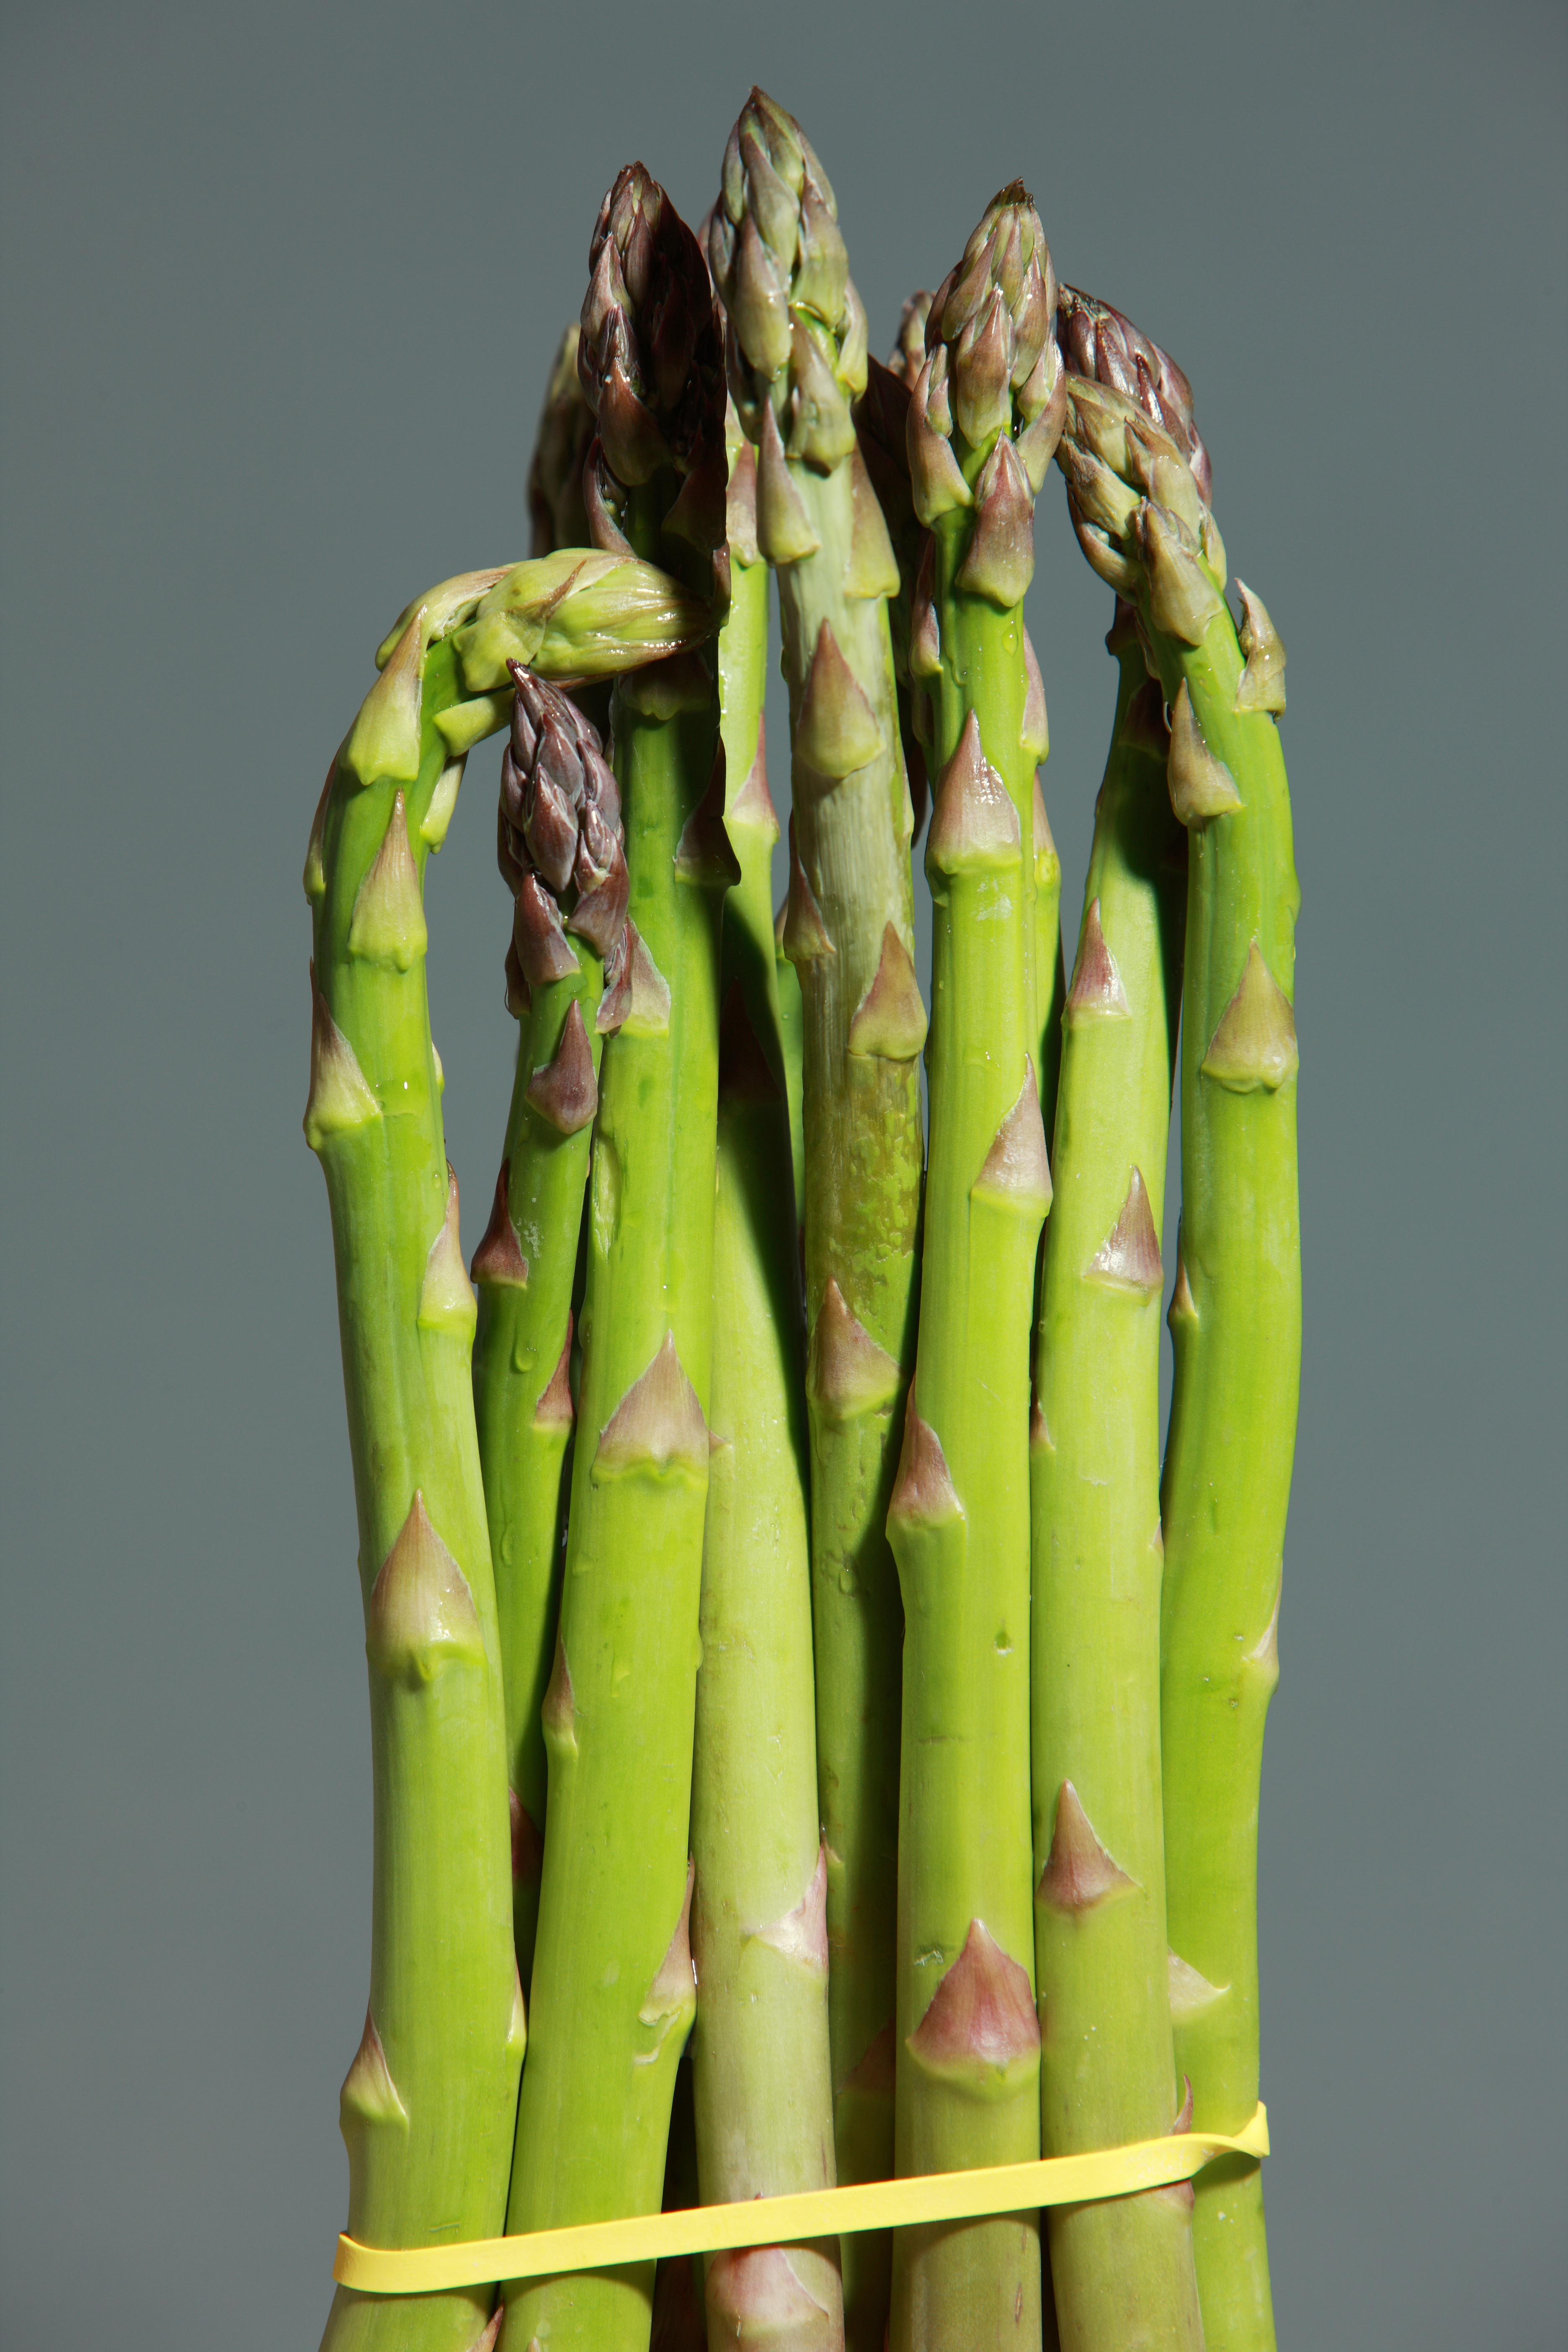 green asparagus, asparagus, green